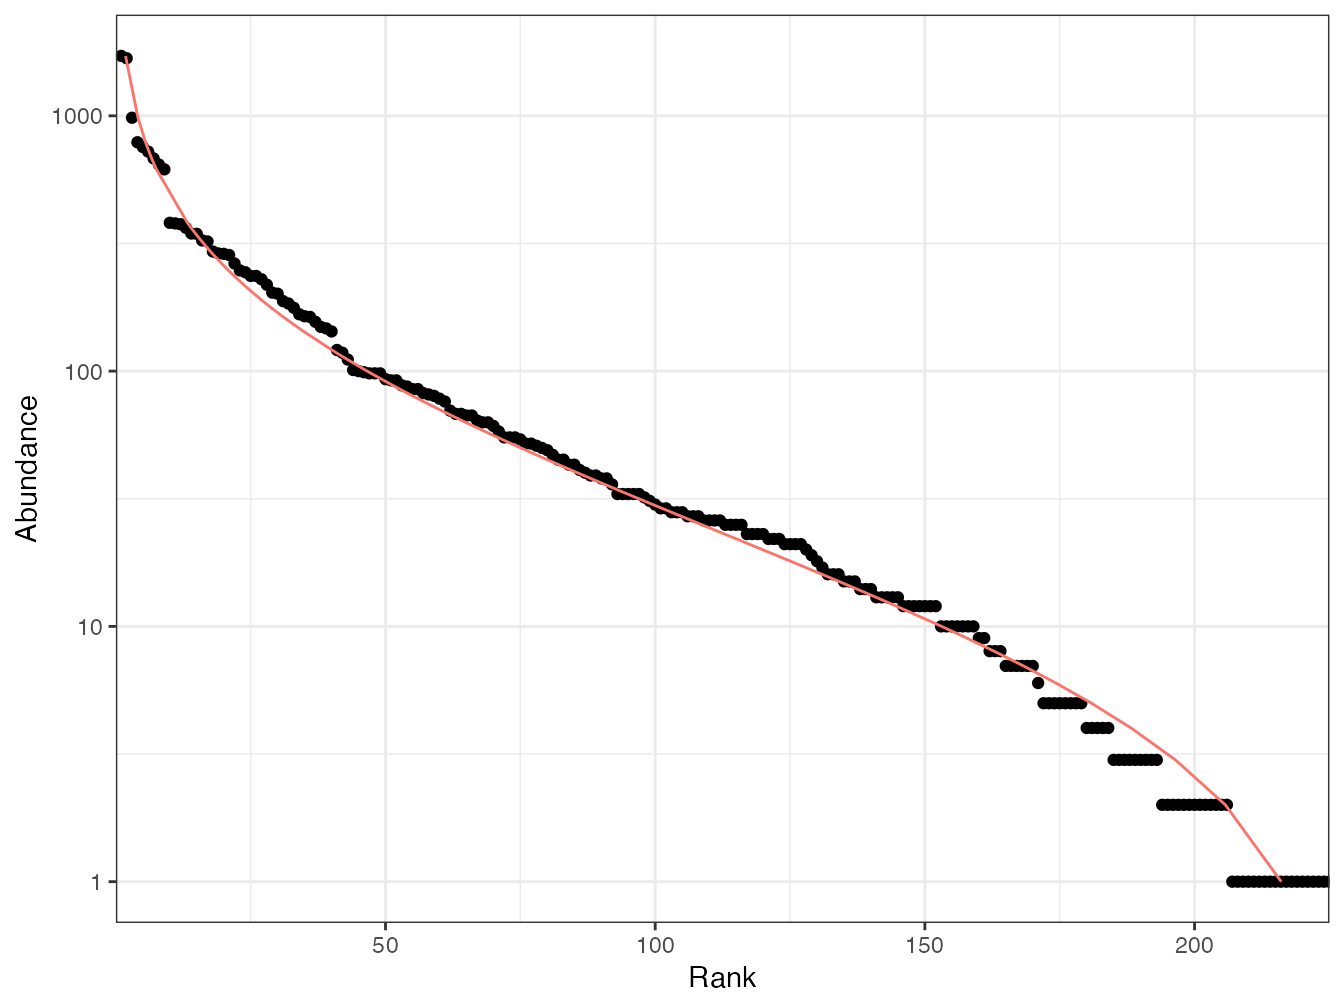 Diagramme rang-abondance (diagramme de Whittaker) des arbres du dispositif de Barro Colorado Island. Les points sont les données : en abscisse : le rang de l’espèce, à partir de la plus abondante ; en ordonnée : l’abondance de l’espèce. La courbe est l’ajustement d’une distribution log-normale.